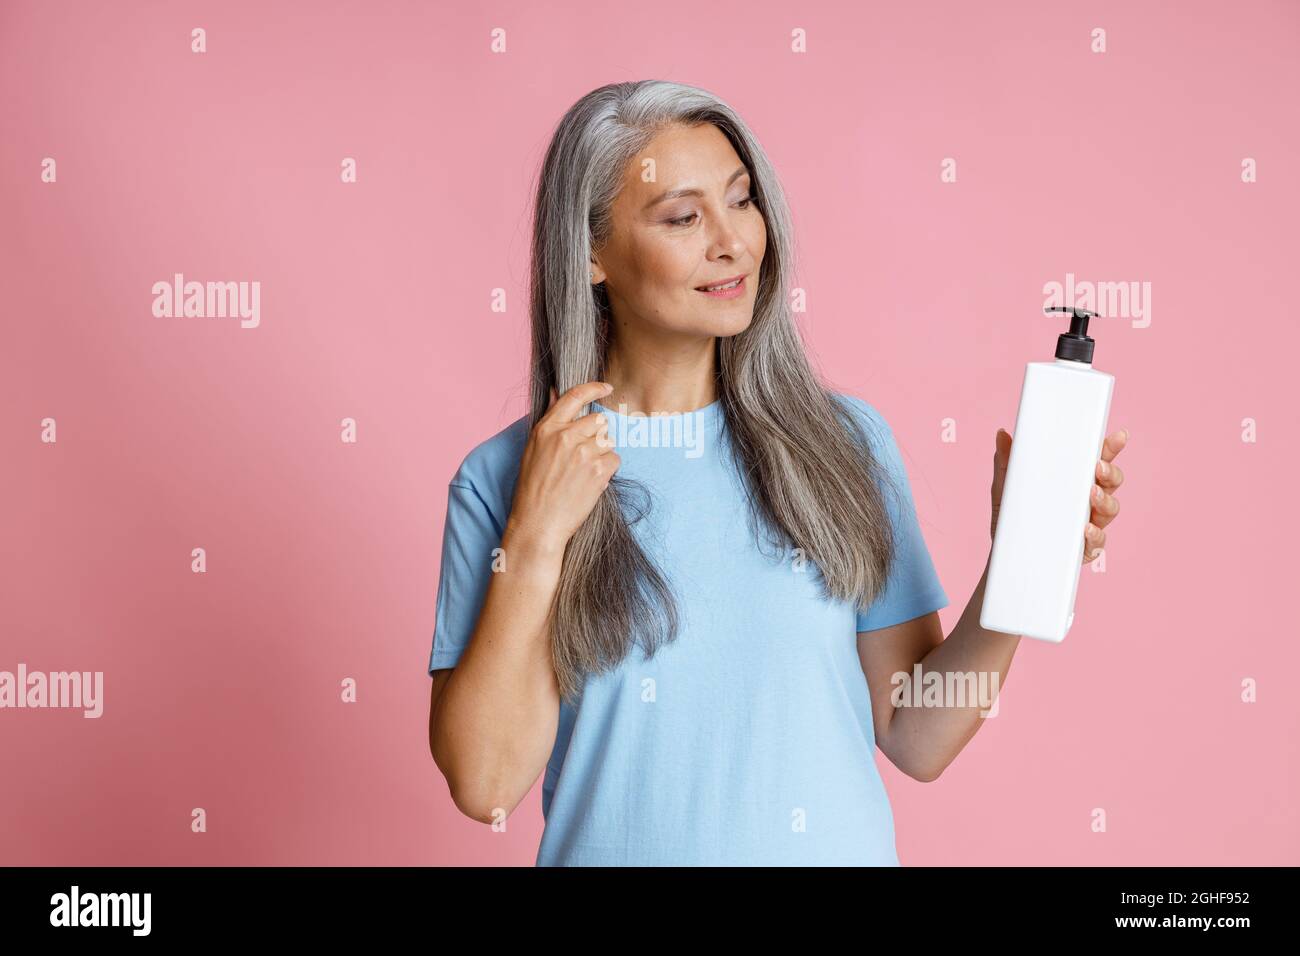 Schöne reife asiatische Frau mit silbernen Haaren hält leere Spenderflasche auf rosa Hintergrund Stockfoto